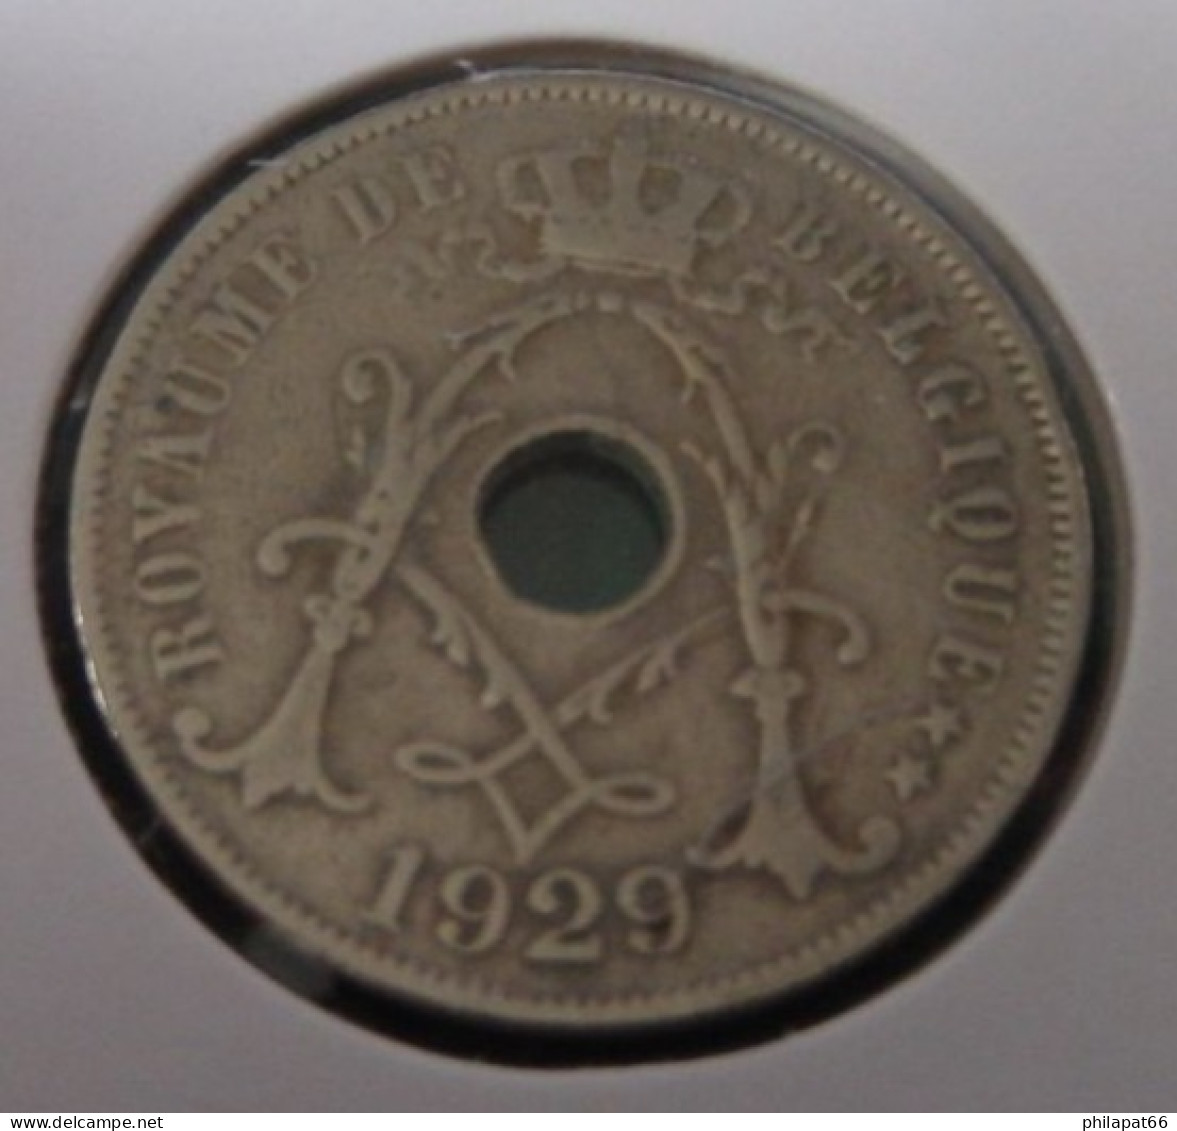 Albert I 25 Cent Monogram 1929FR - 25 Cents